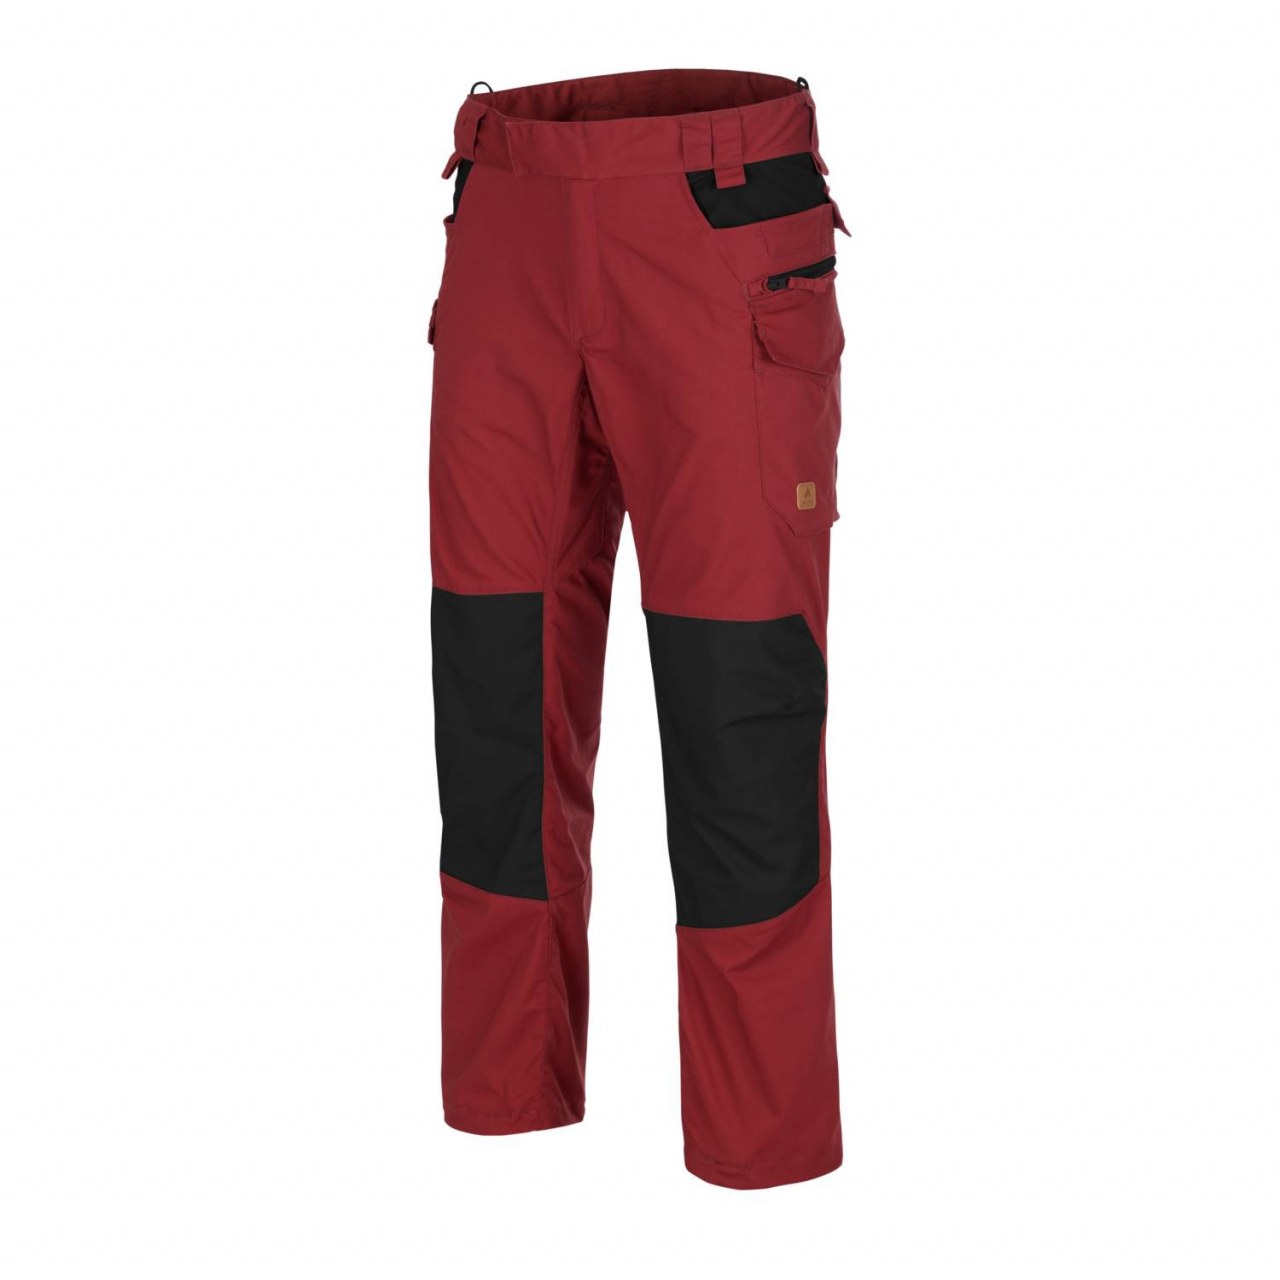 Kalhoty Helikon Pilgrim - červené-černé, XS